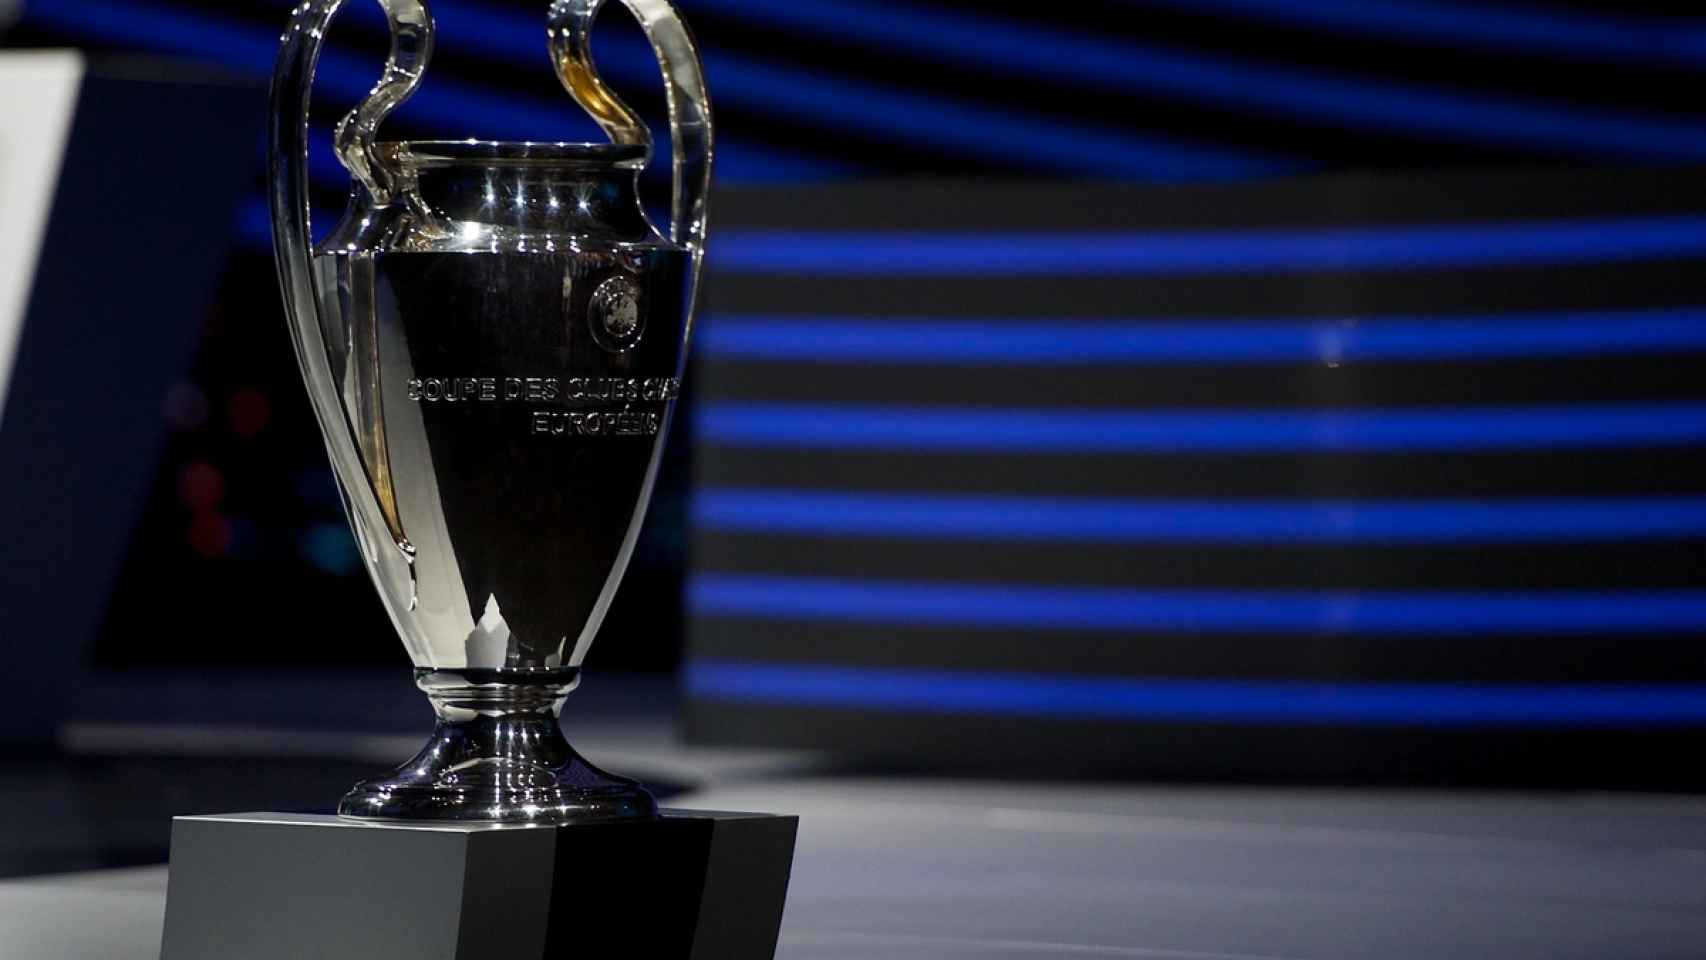 ¿Quiénes serán los rivales de Madrid, Barça y Sevilla?